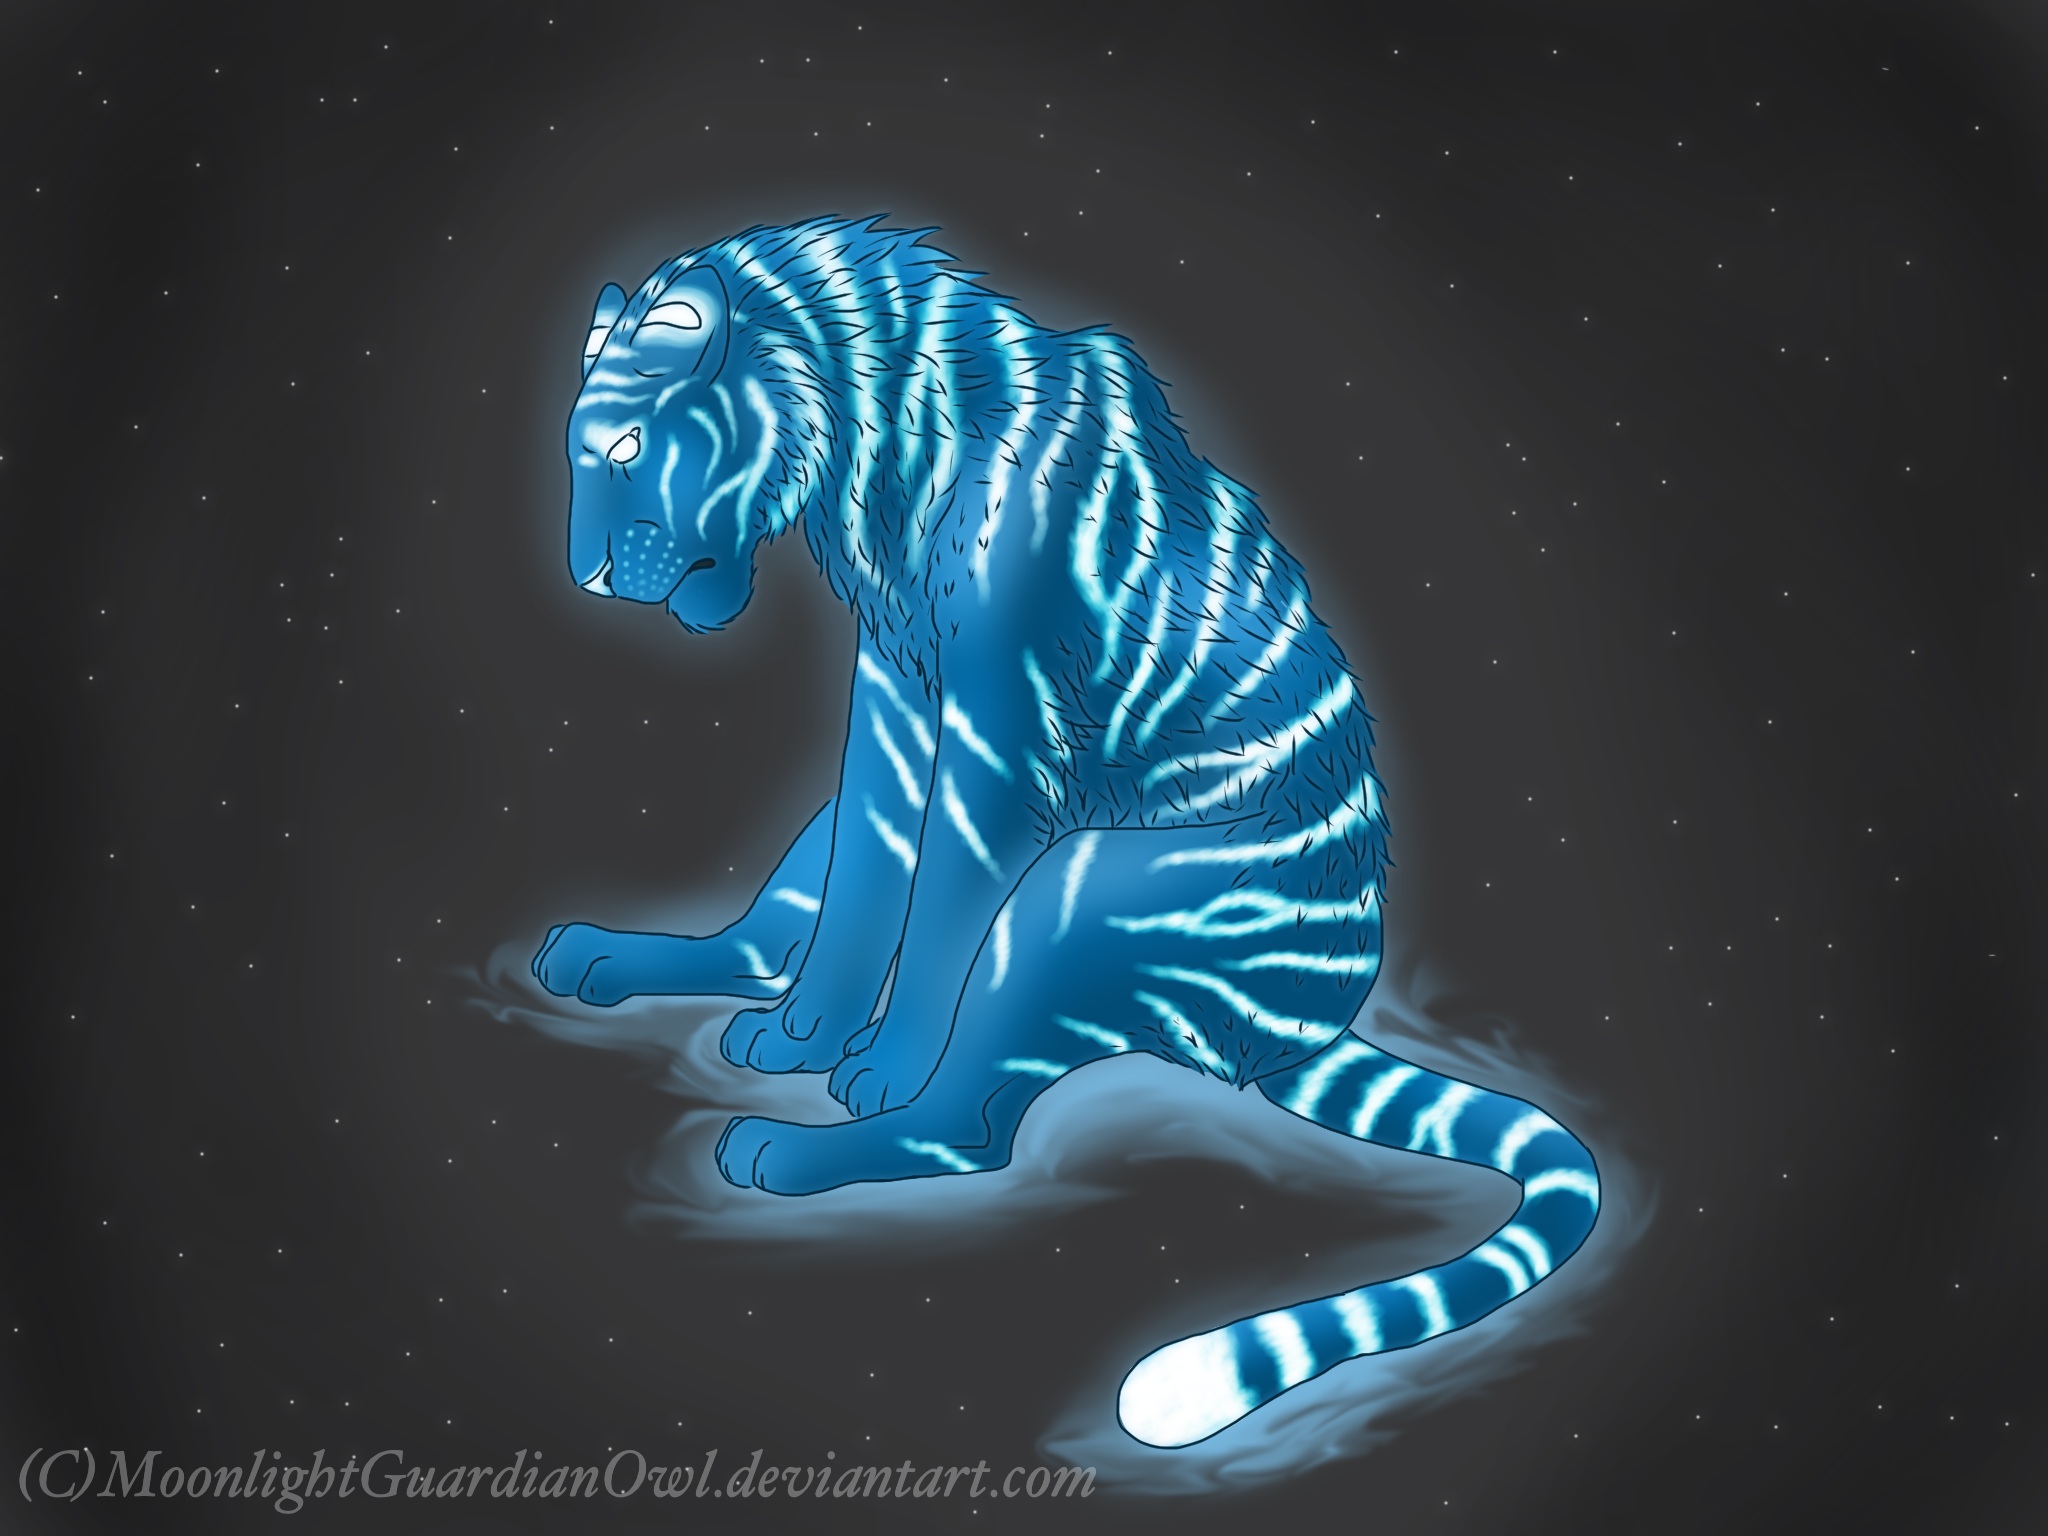 Tiger spirit by MoonlightGuardianOwl on DeviantArt